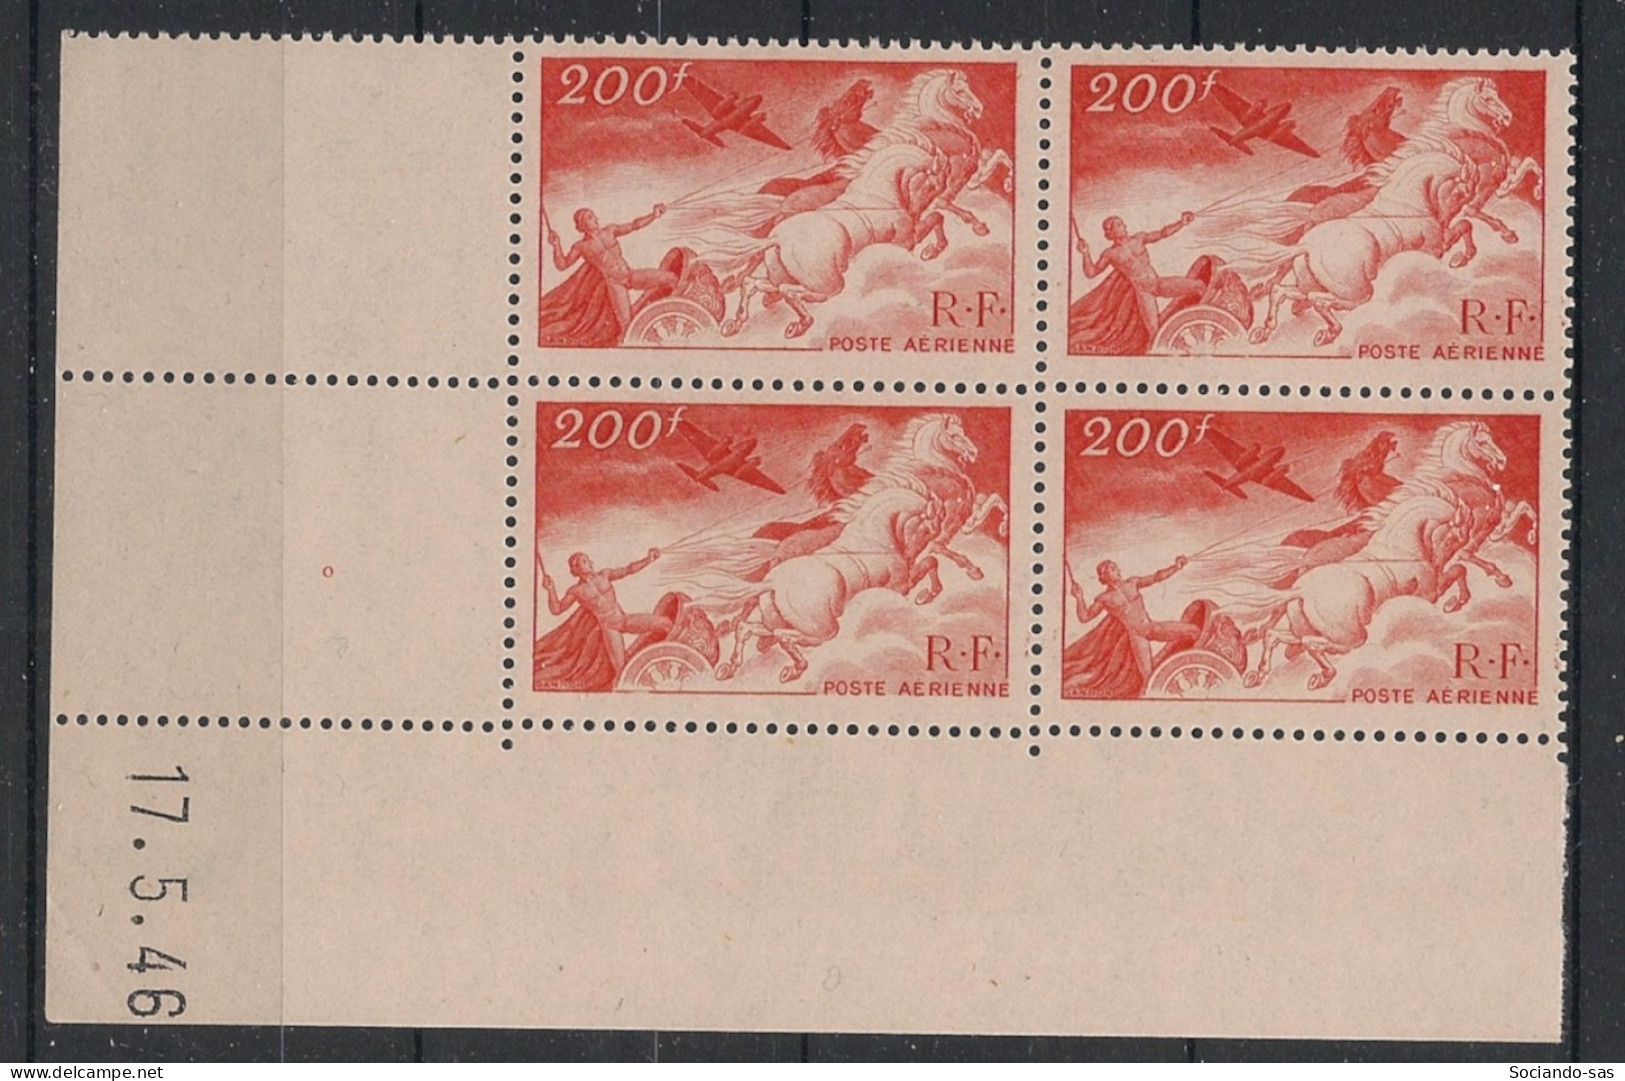 FRANCE - 1946 - Poste Aérienne PA N°YT. 19 - Char Du Soleil 200f - Bloc De 4 Coin Daté - Neuf Luxe** / MNH - Airmail